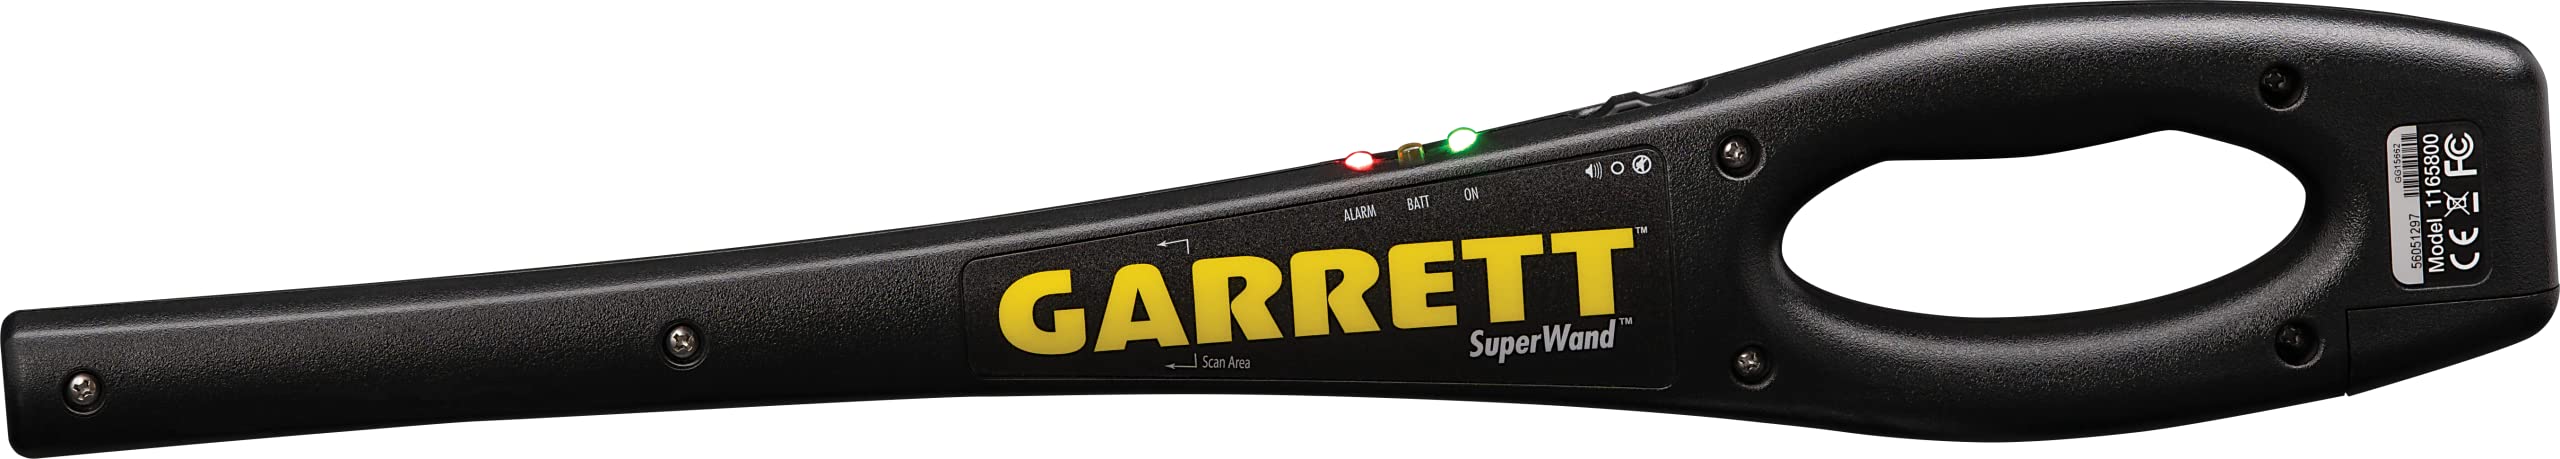 Garrett Detector de metales SuperWand